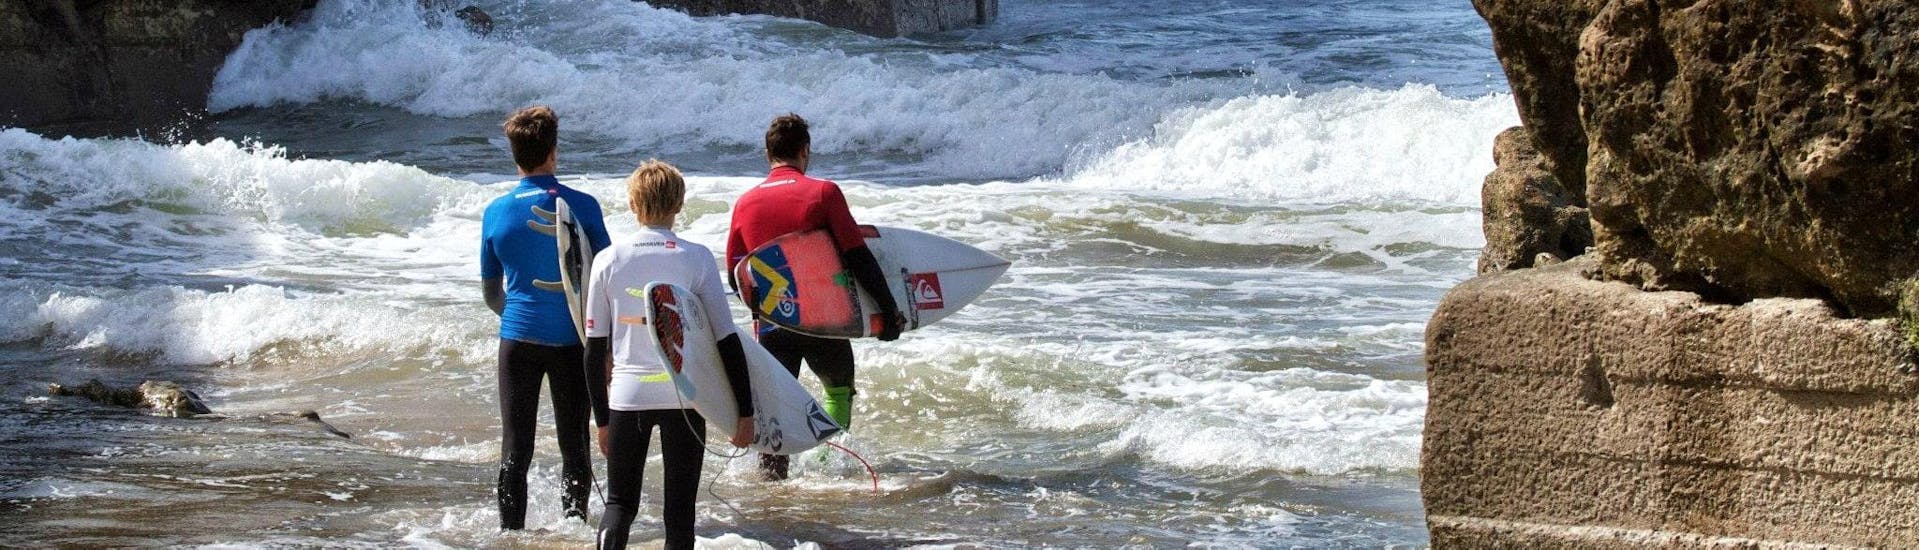 Trois surfeurs se dirigent vers la mer pour leurs cours de surf avec Capbreton Surfer School.